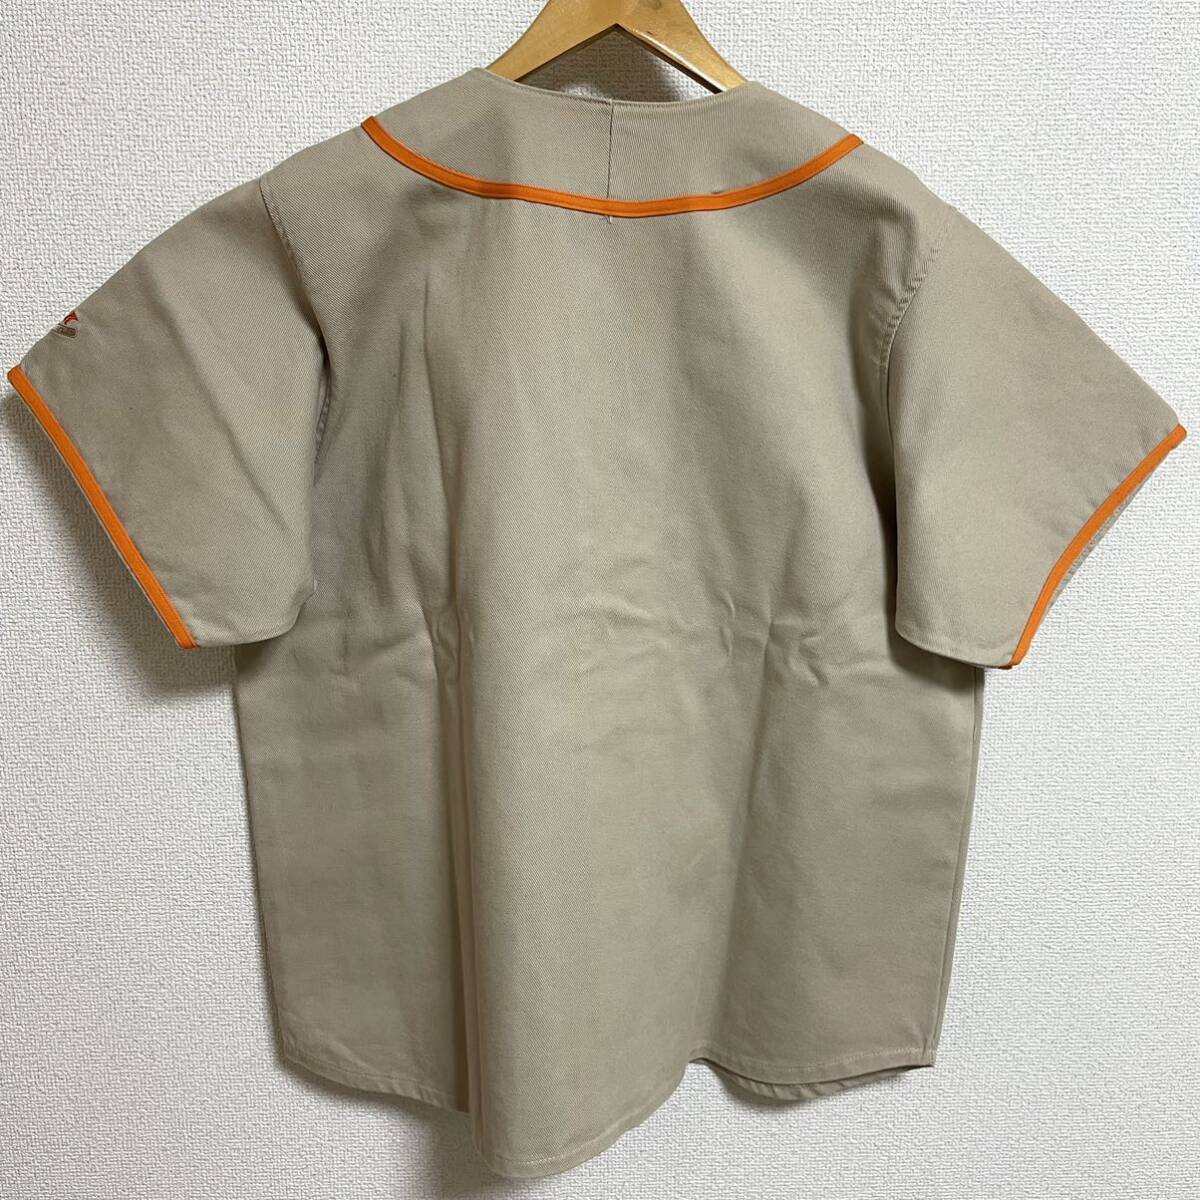 激レア Supreme Baseball Arc Logo Shirt Tan XL 1990年代 90s 茶 タン ベースボール アーチロゴ シャツ 半袖シャツ 初期 OLD Vintage_画像2